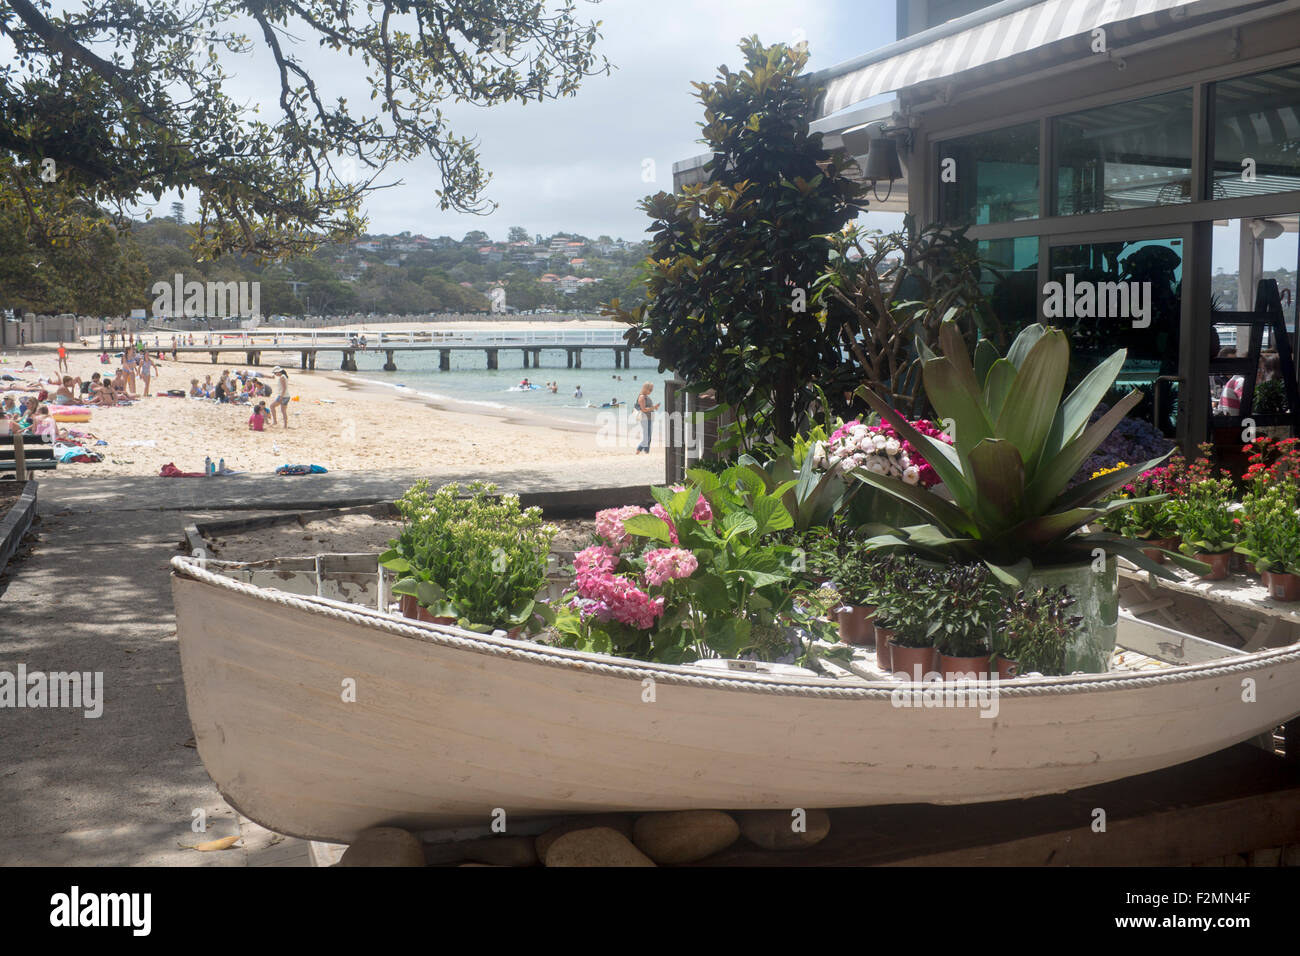 Balmoral Beach Sydney bateau rempli de fleurs à l'extérieur de cafe Sydney HArbour NSW Australie Nouvelle Galles du Sud Banque D'Images